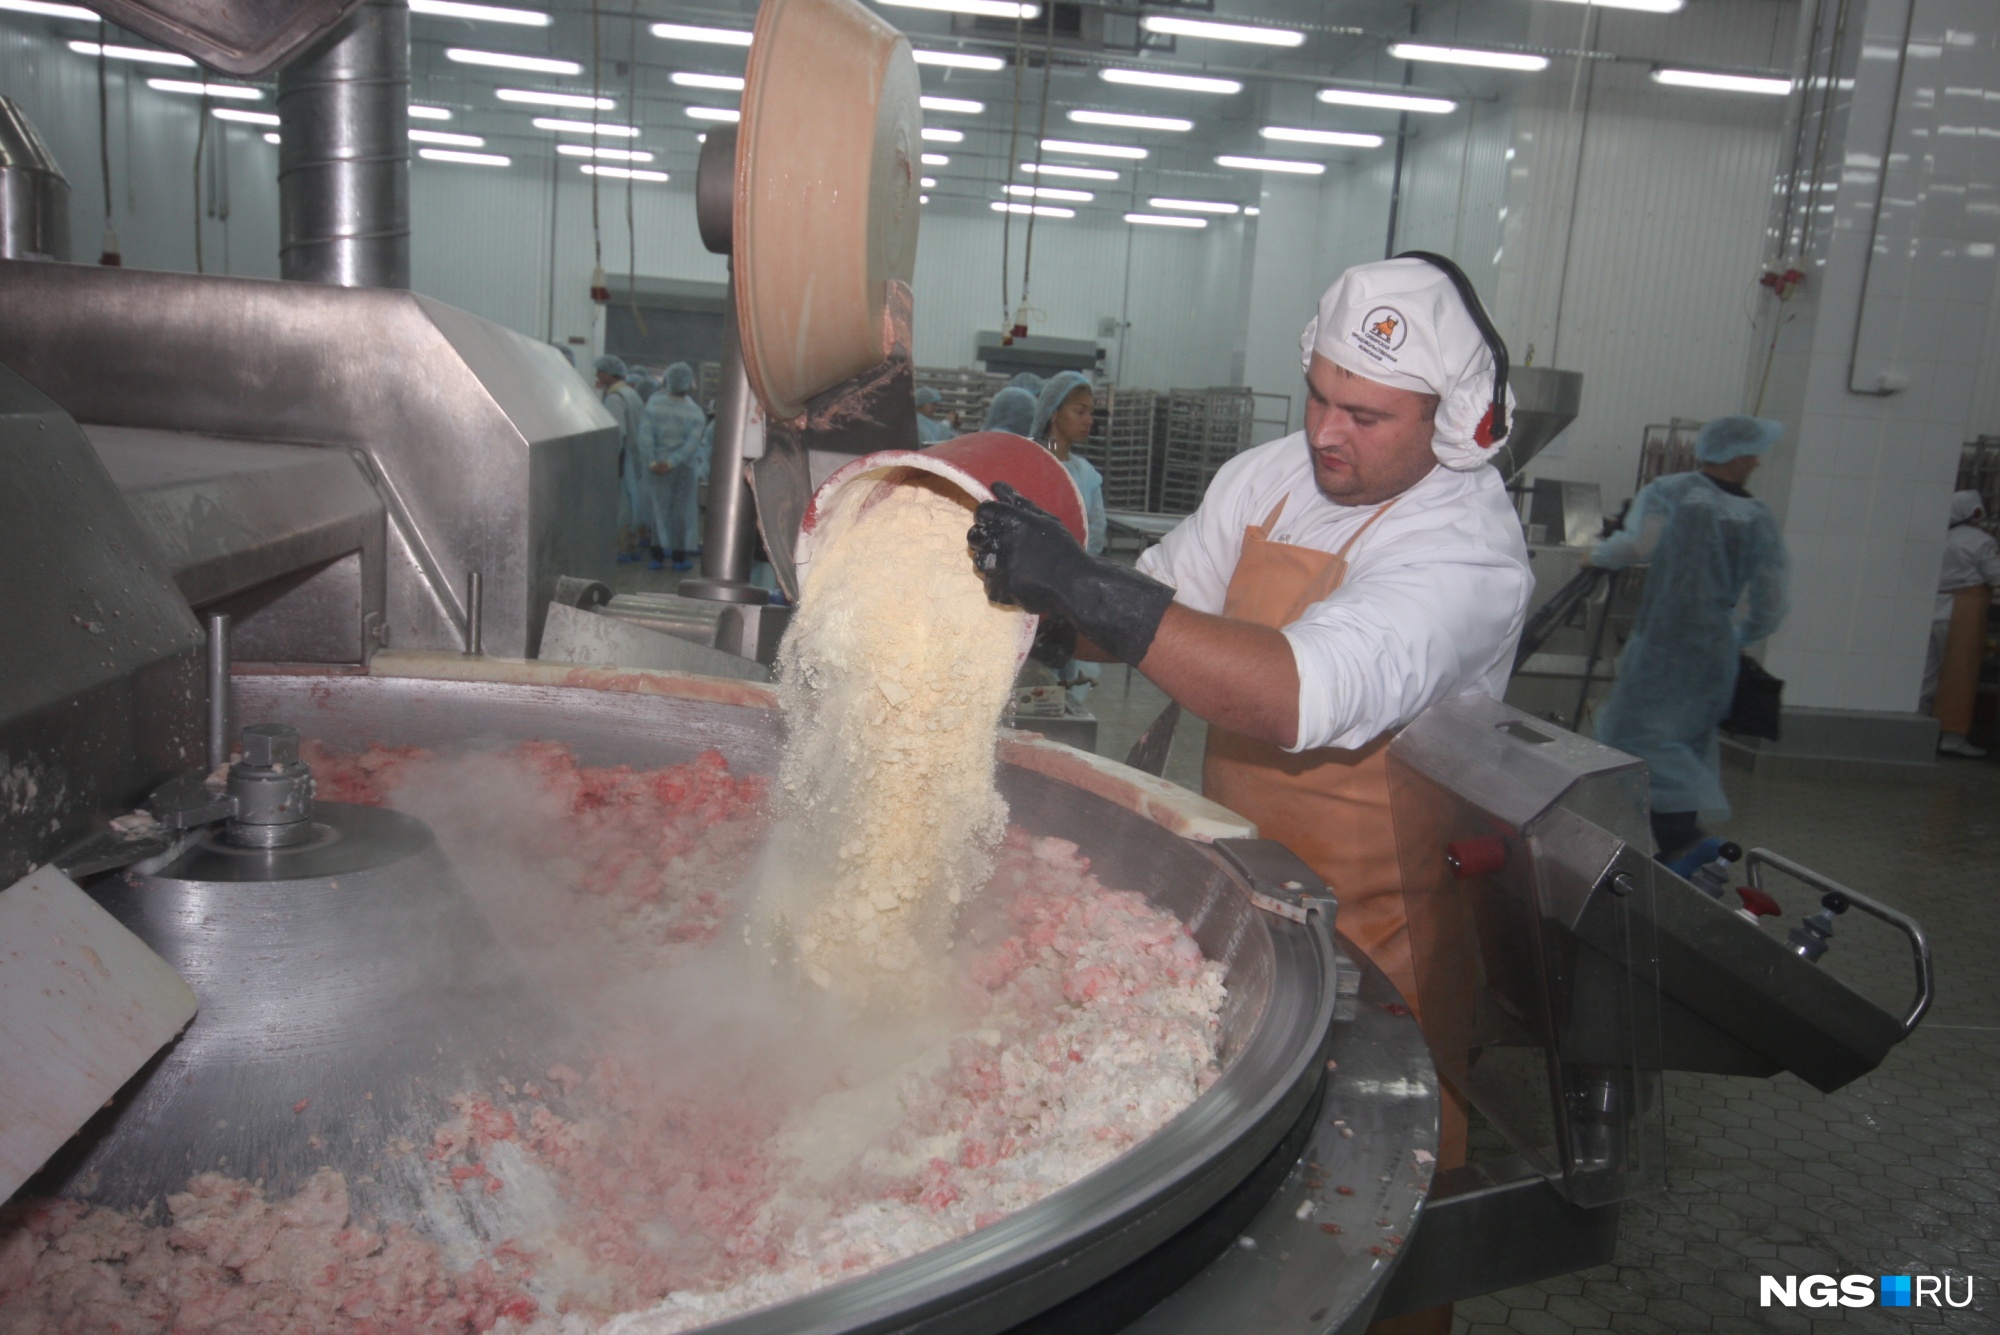 Подготовка фарша для вареной колбасы. На фото работник добавляет в фарш смесь из яичного порошка и сухого молока